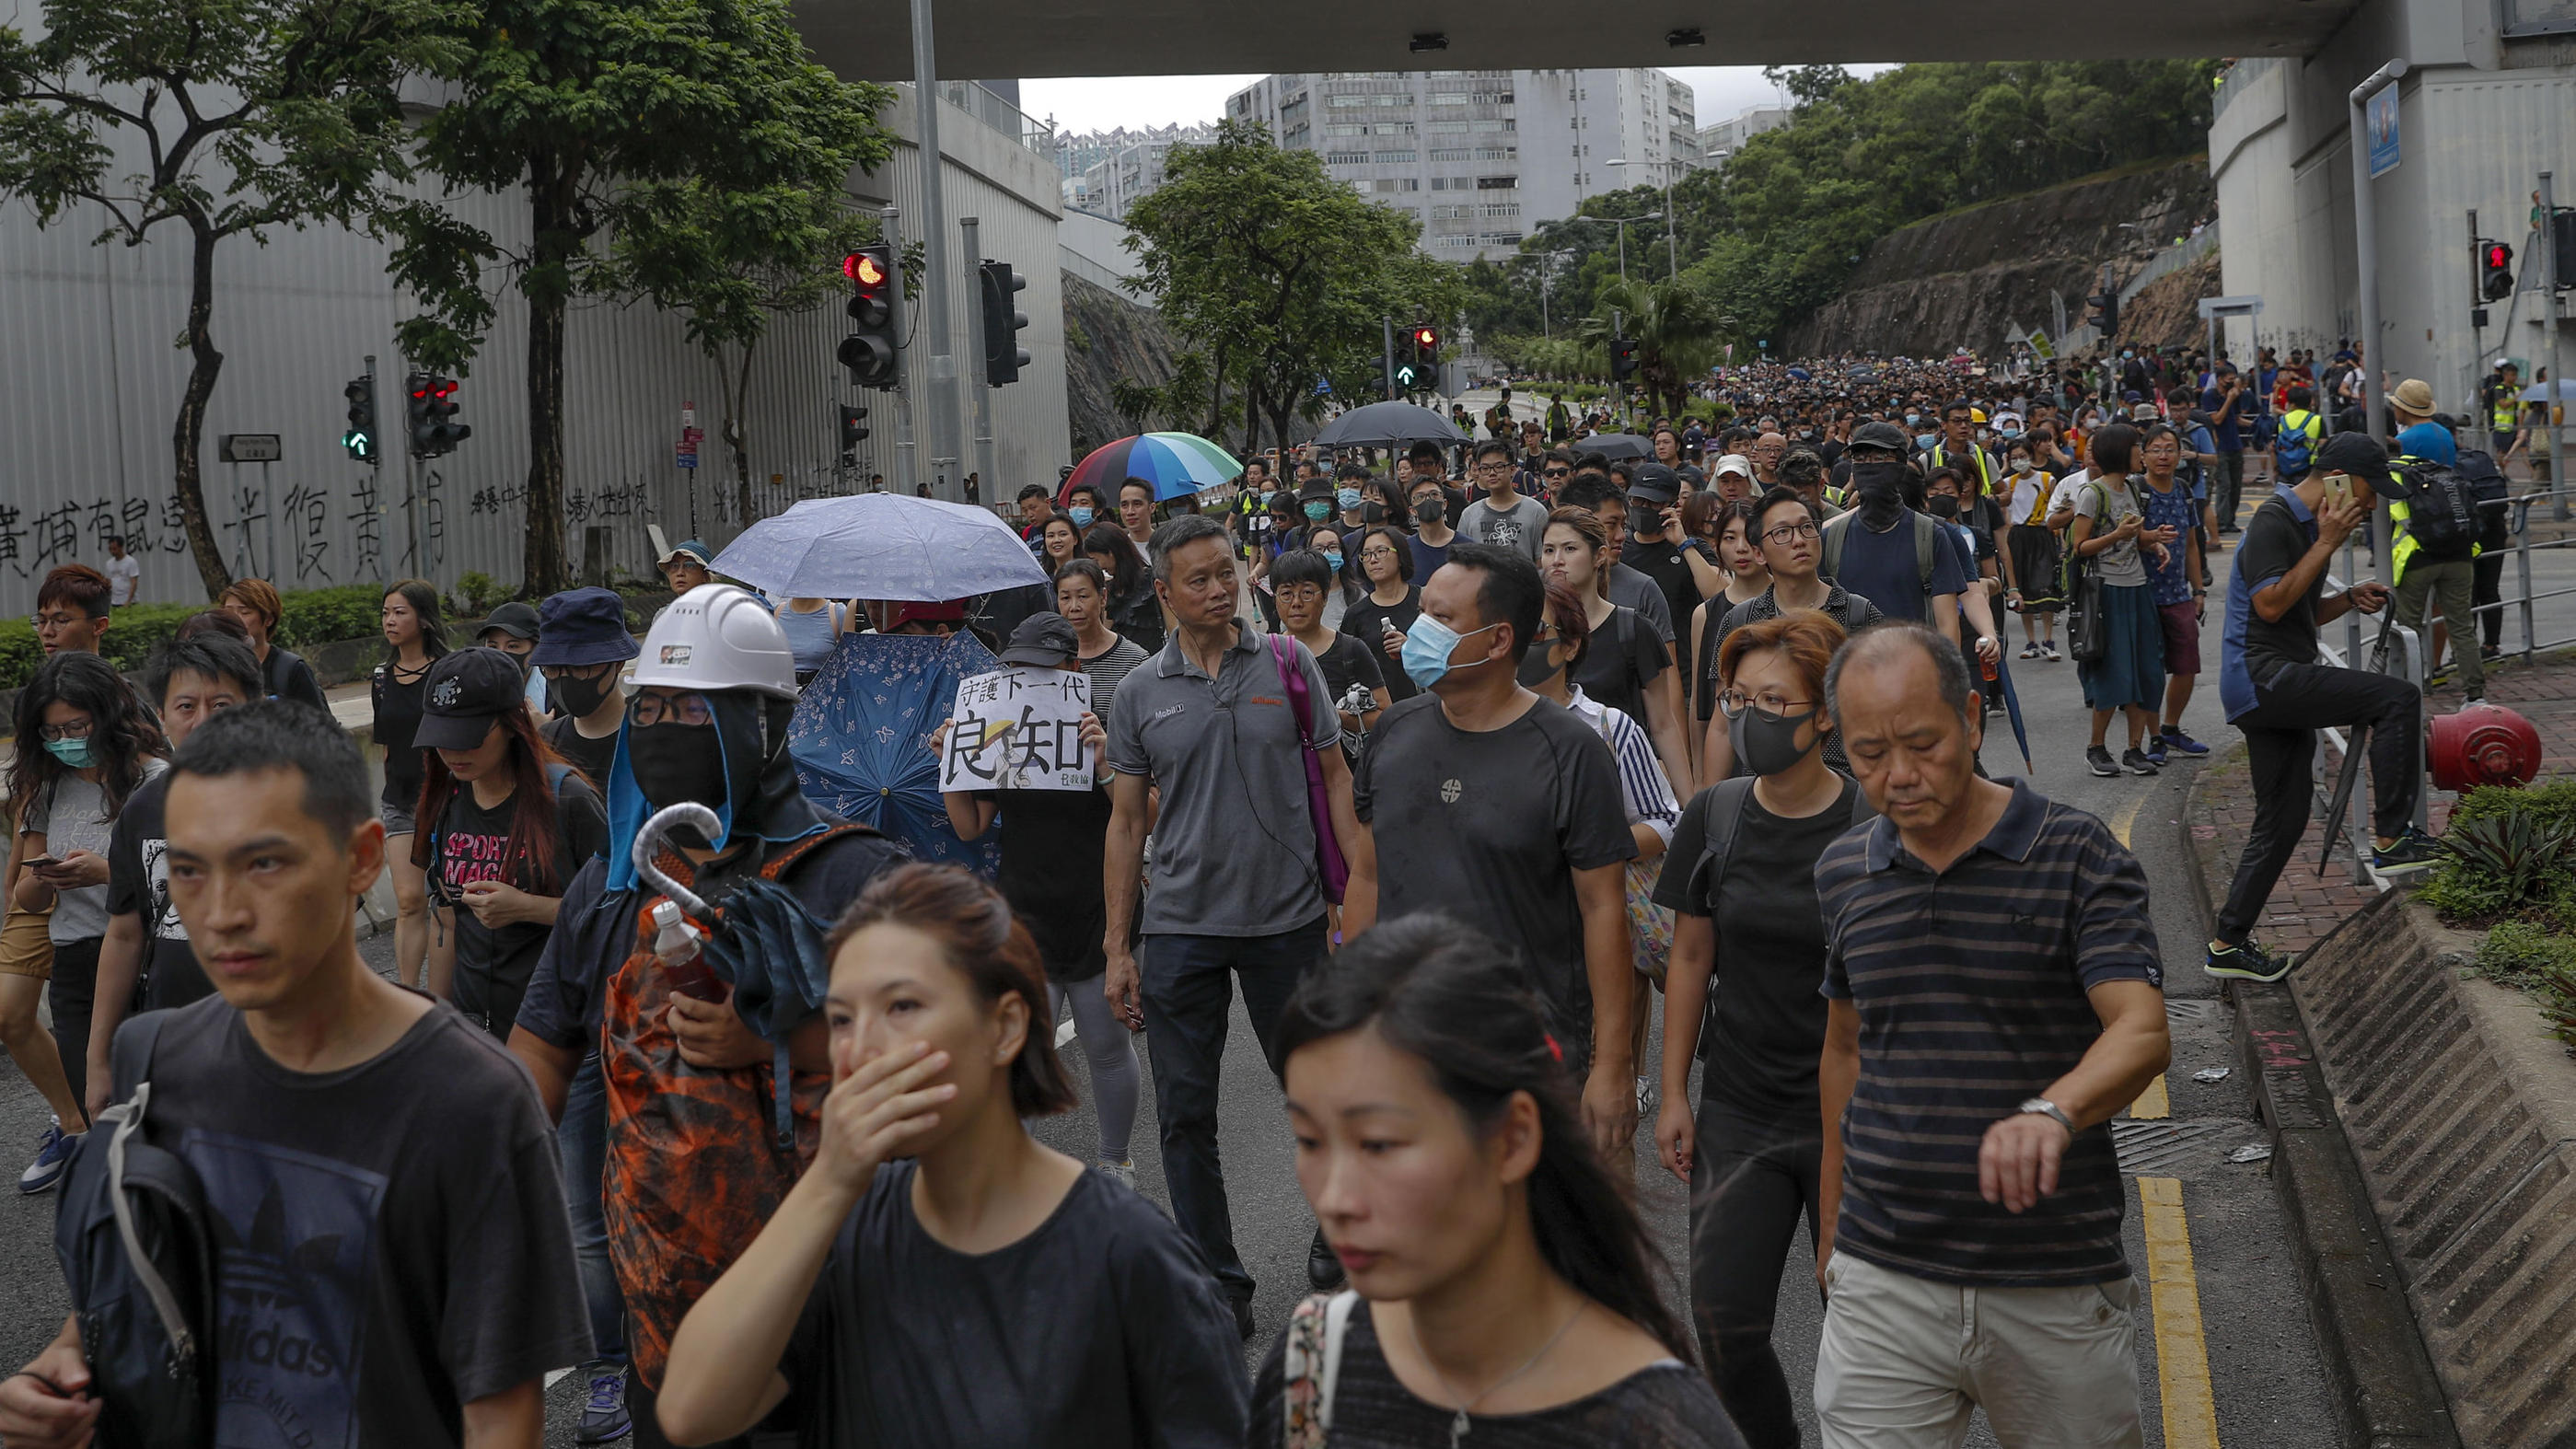 17.08.2019, China, Hongkong: Demonstranten nehmen an einem Marsch teil, der von einer prodemokratischen Gruppe organisiert wird. Mit einer Kundgebung für Freiheit und Demokratie hat am Samstag in Hongkong ein neues Protest-Wochenende begonnen. An der